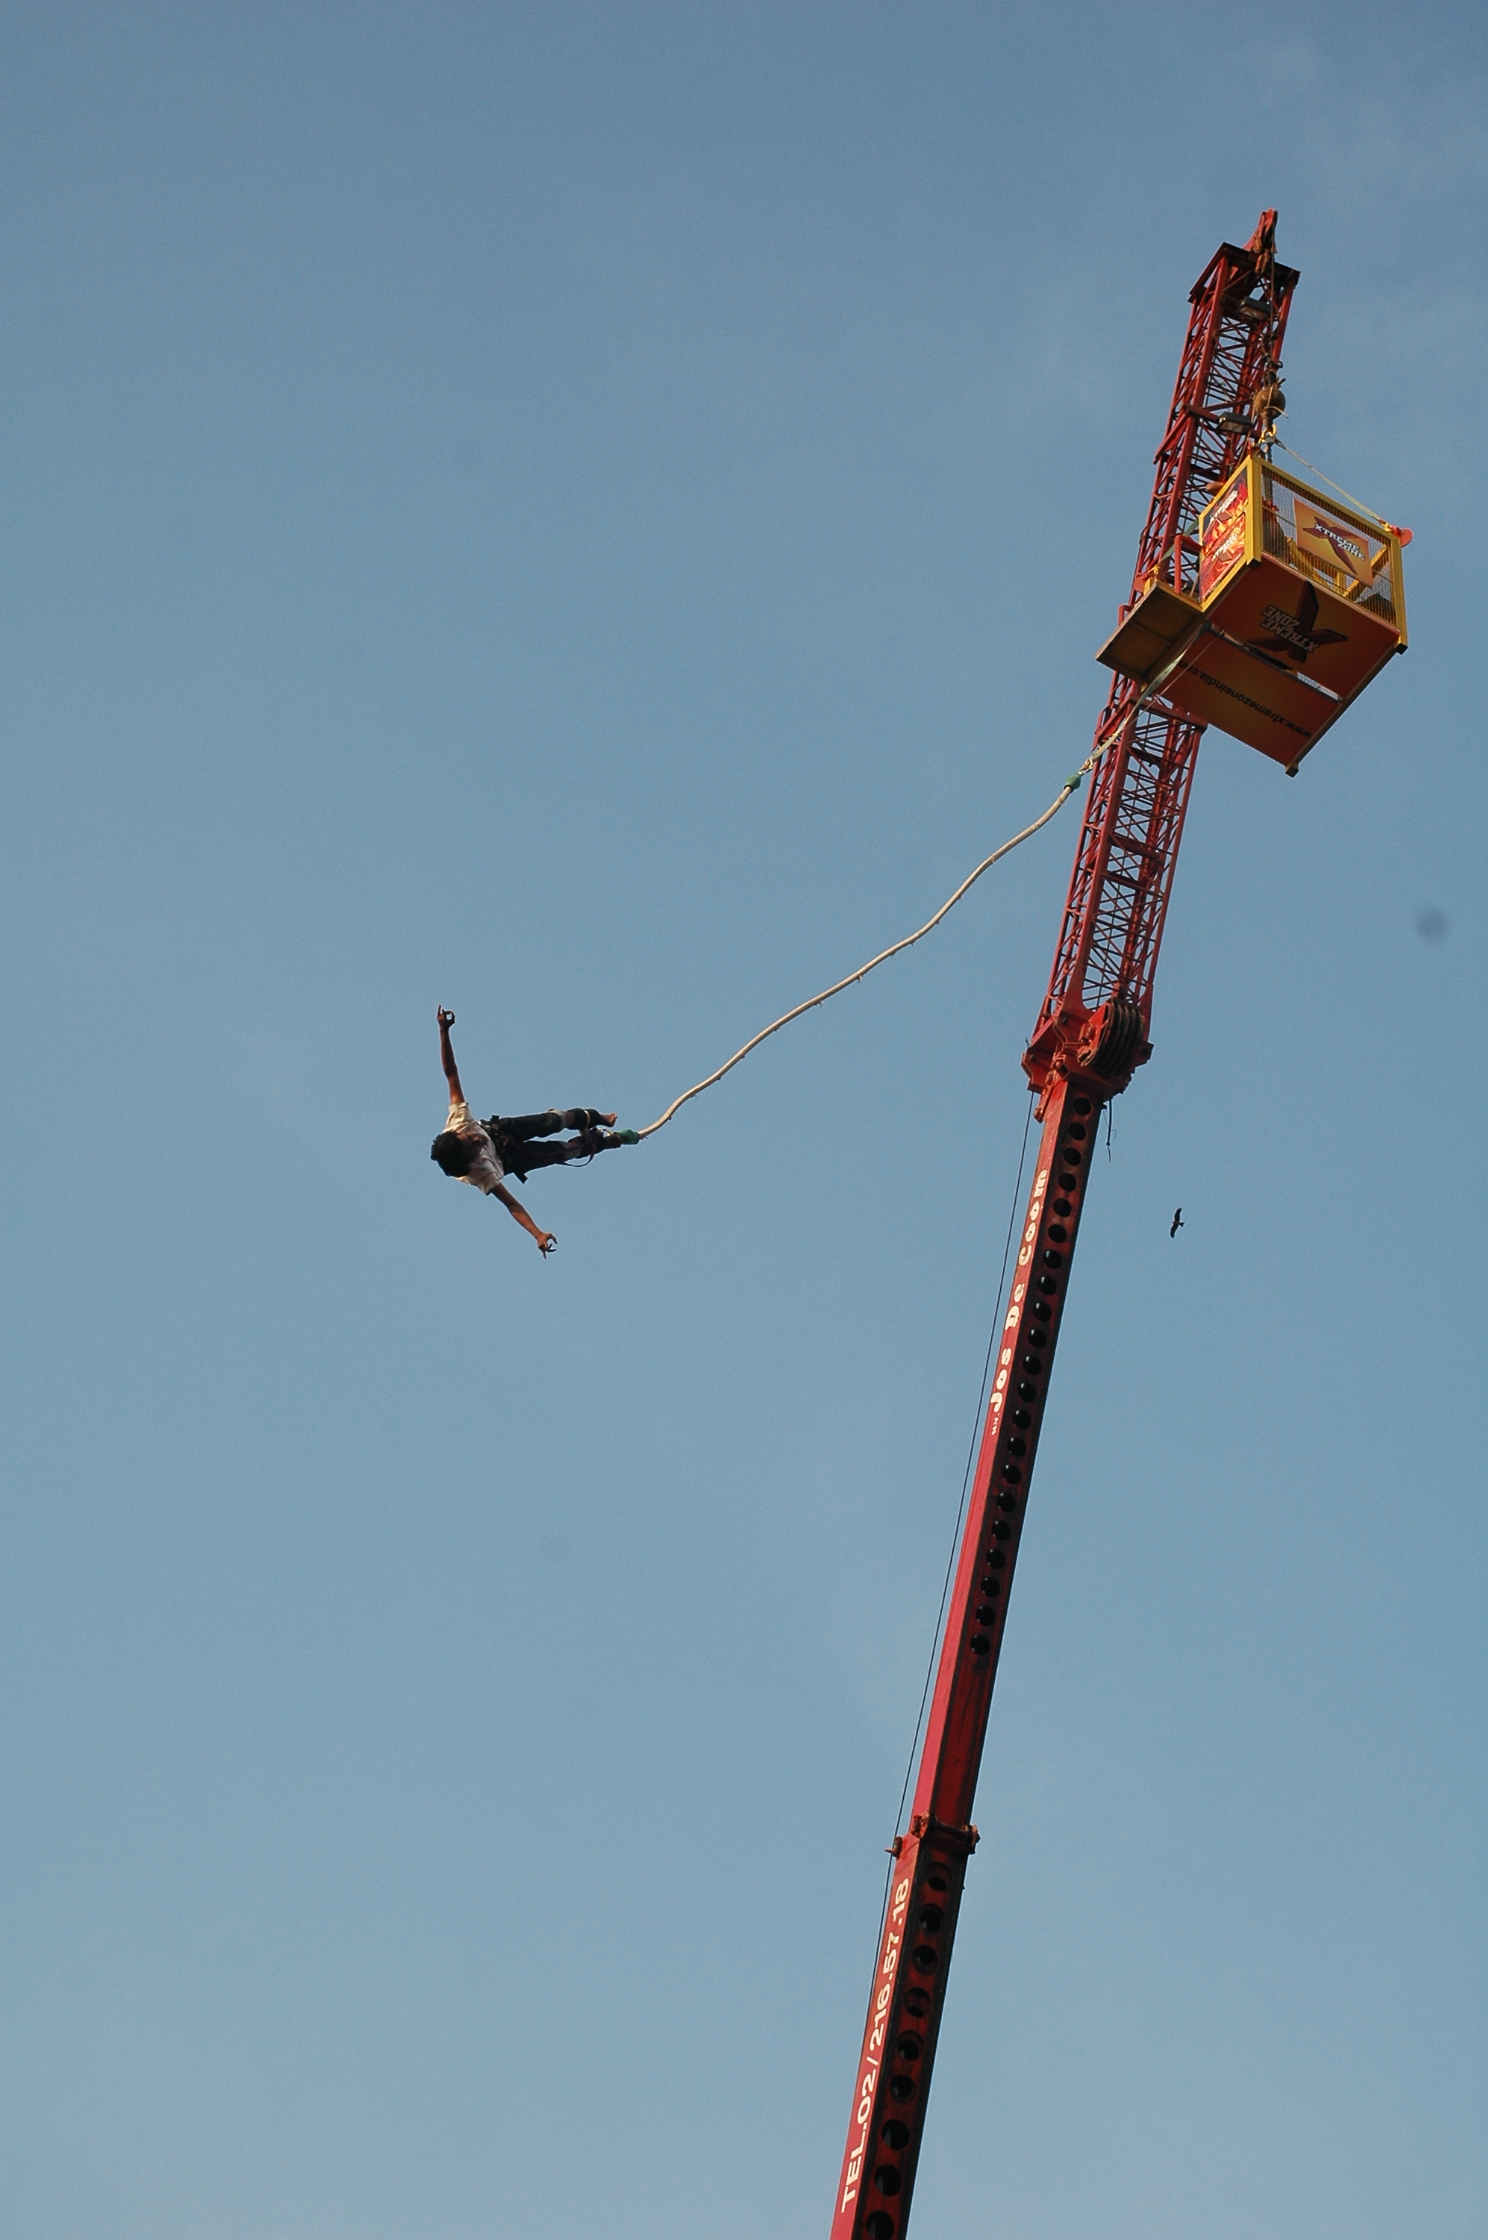 art bungee jumping image